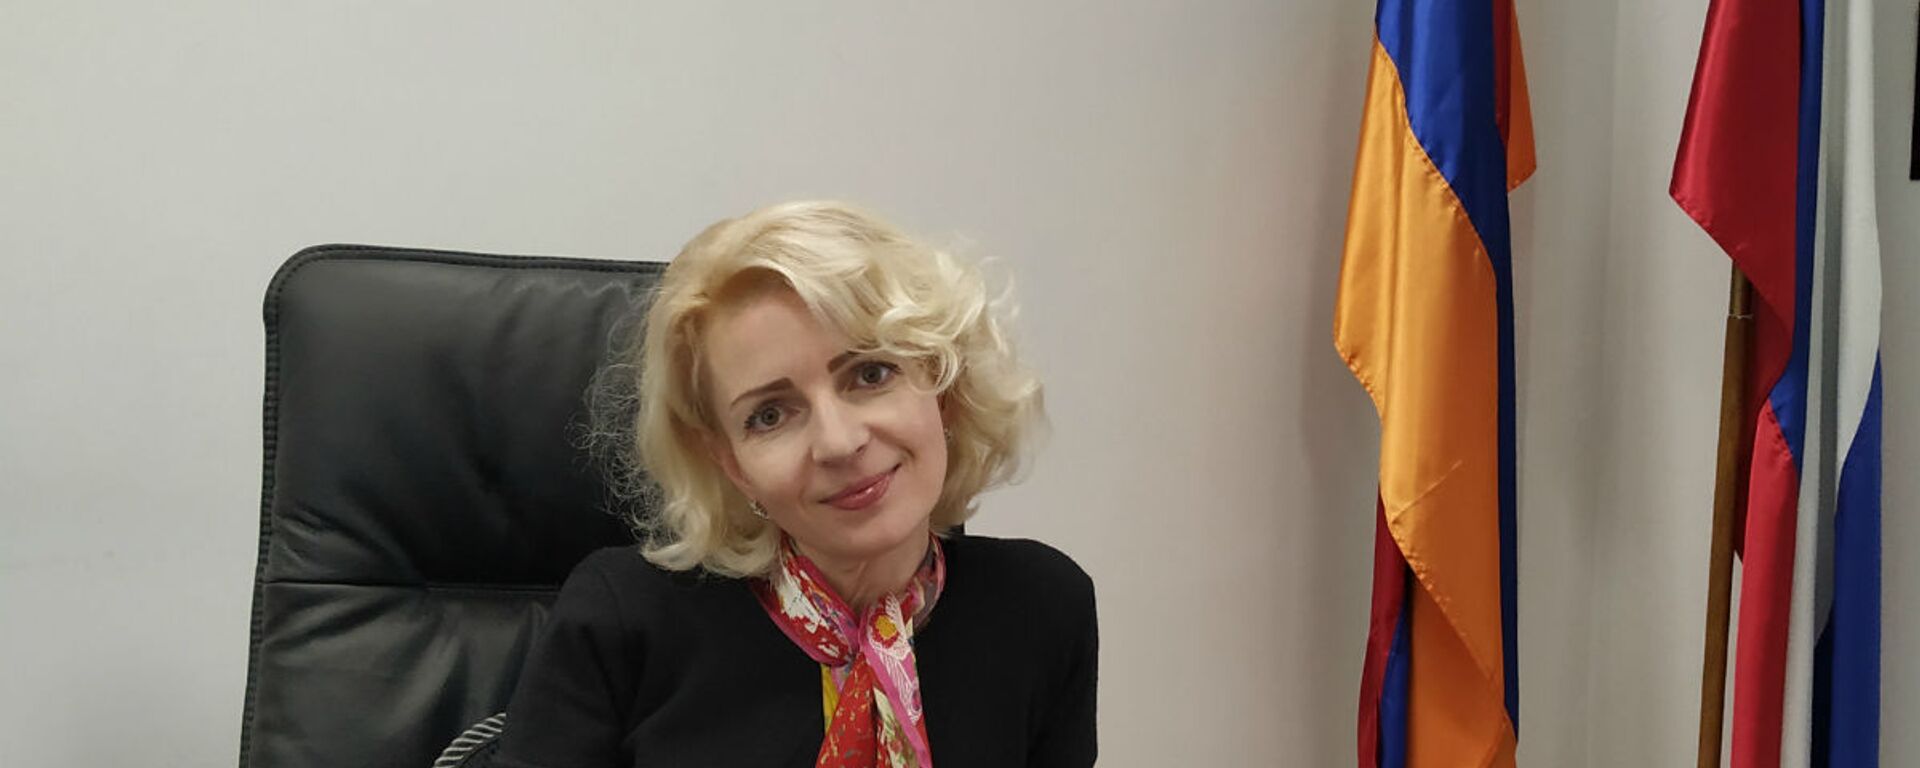 Торговый представитель России в Армении Анна Донченко - Sputnik Армения, 1920, 15.10.2021